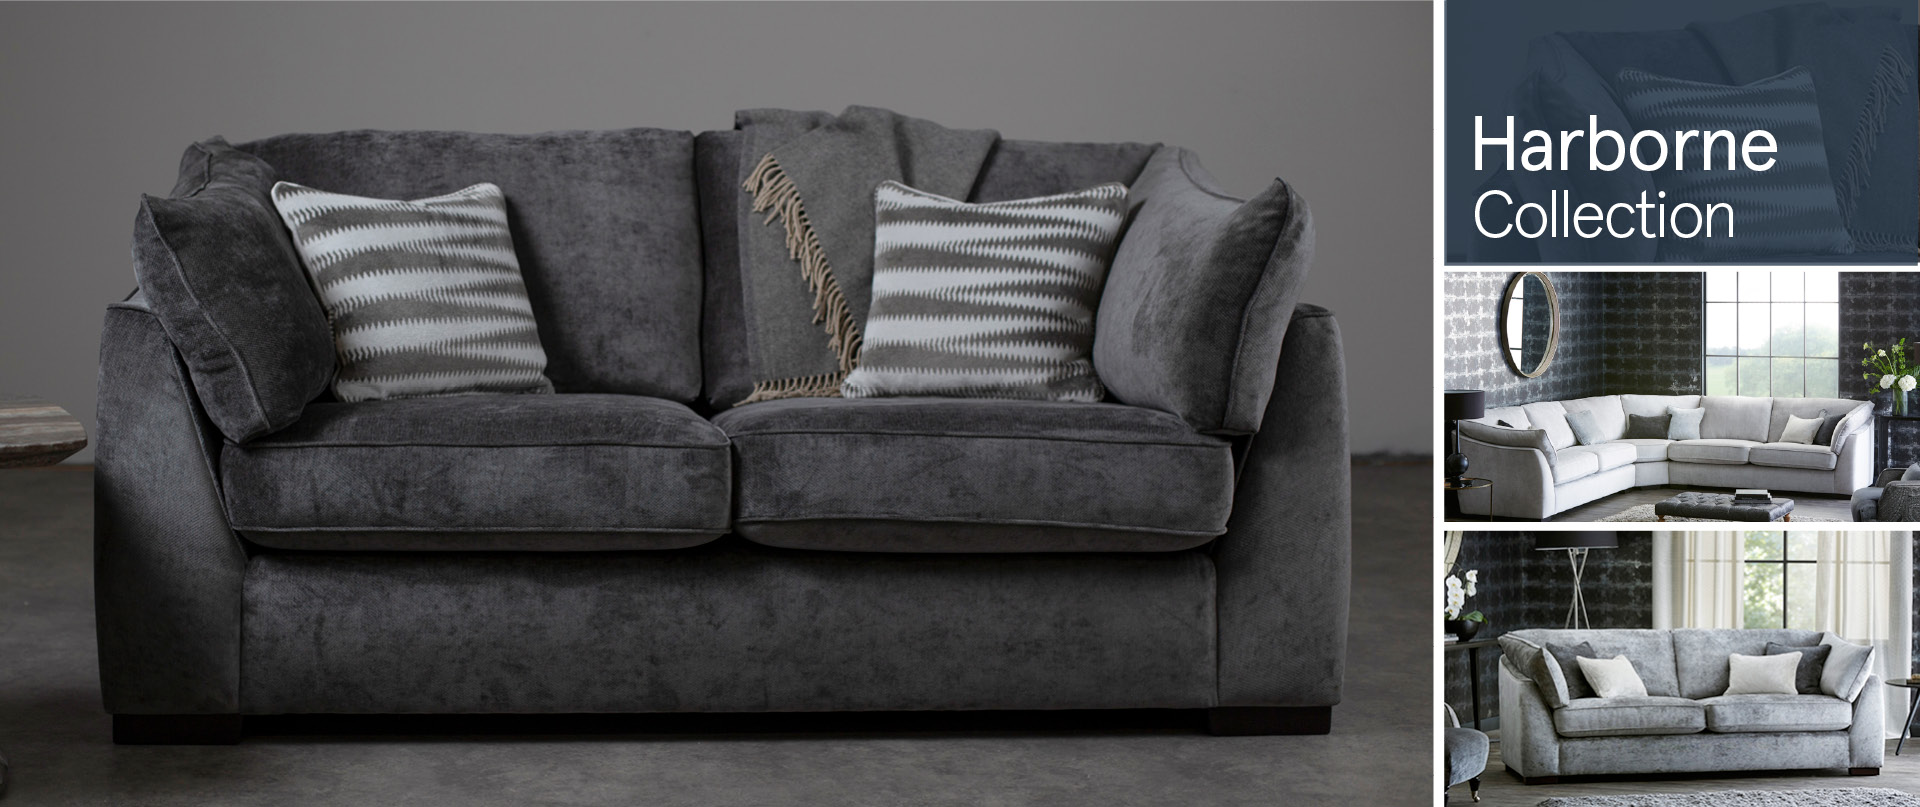 Harborne Fabric Sofa Ranges